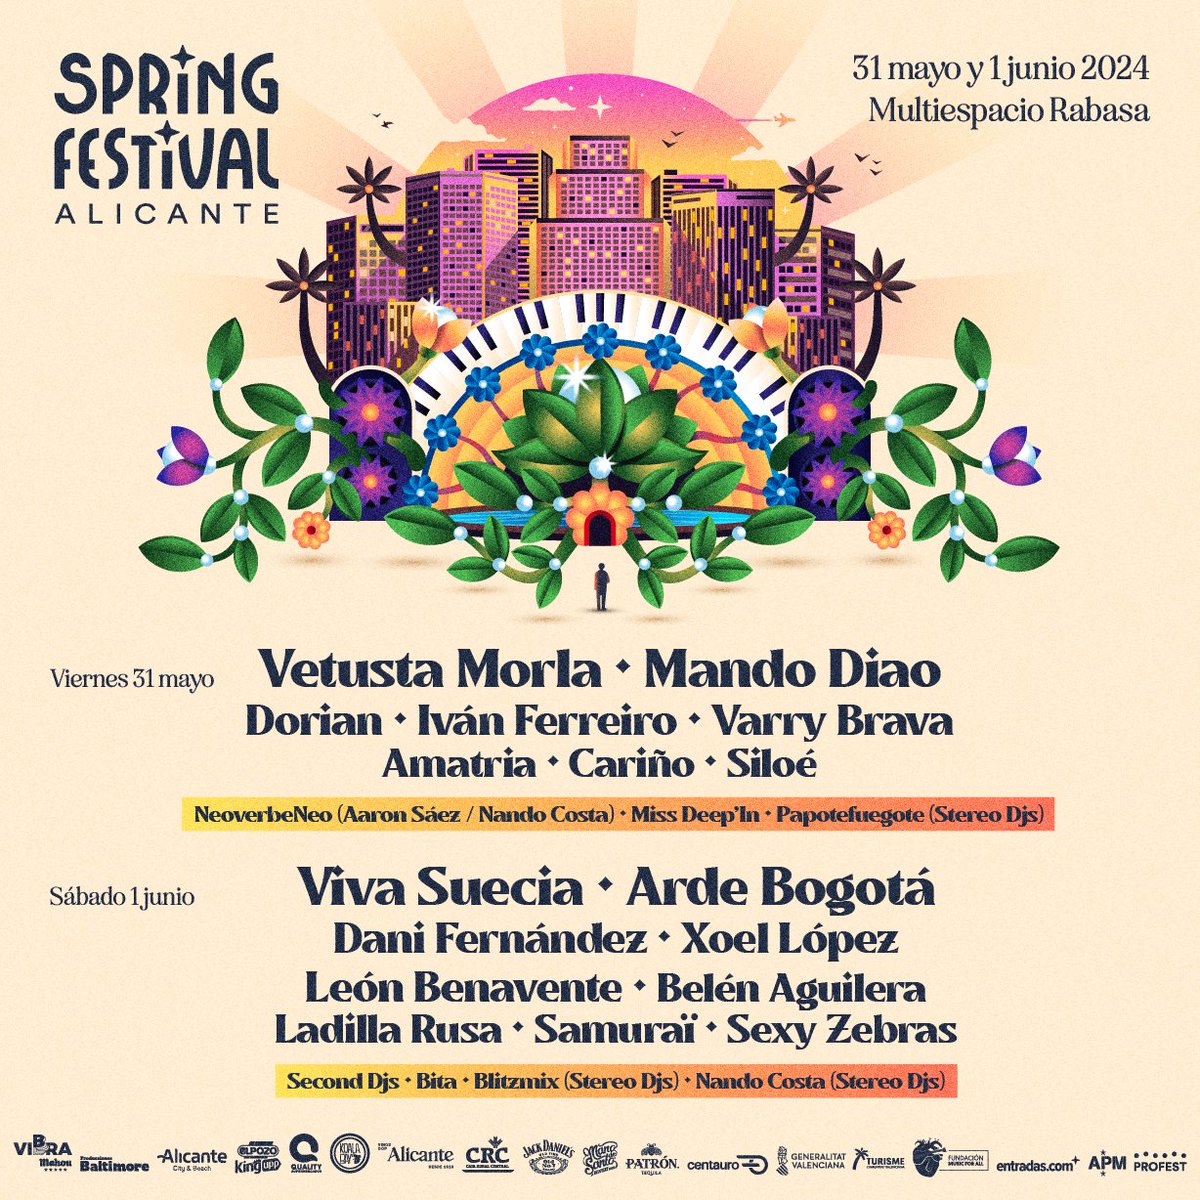 Escuchar tu canción favorita con Alicante de fondo 💫

#SpringFestival2024 - 31 de mayo y 1 de junio📌